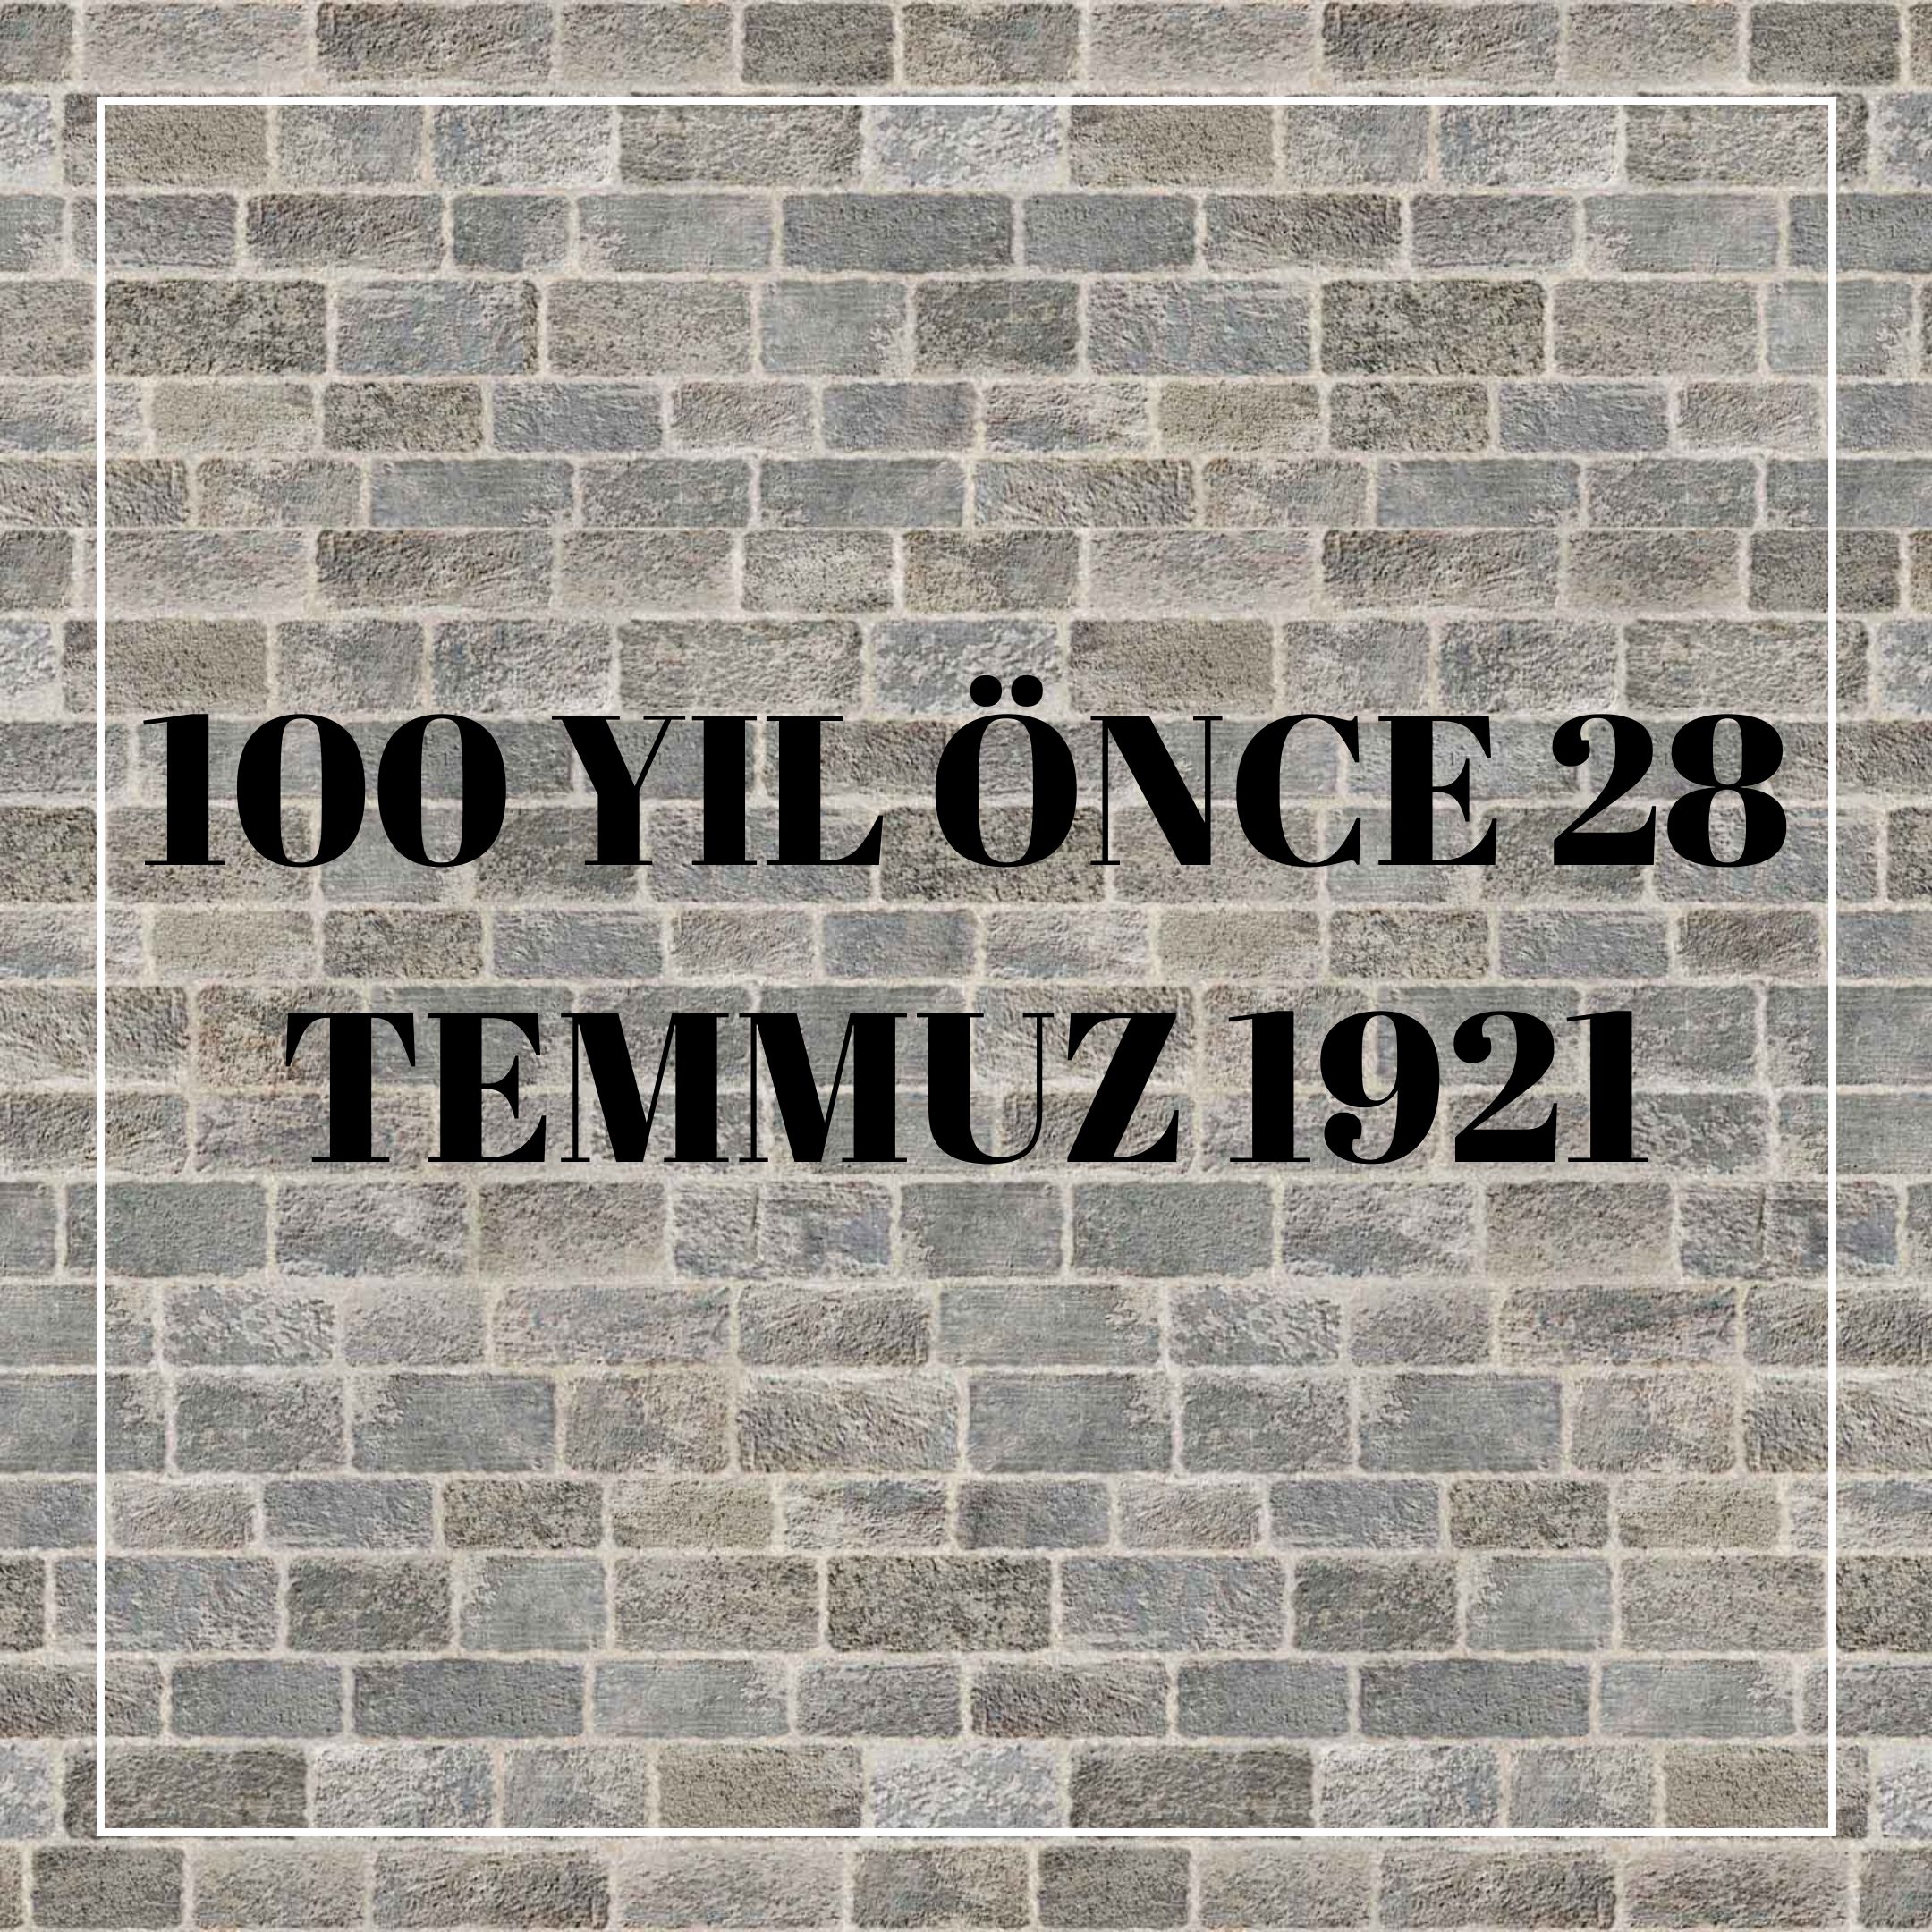 100 YIL ÖNCE 28 TEMMUZ 1921